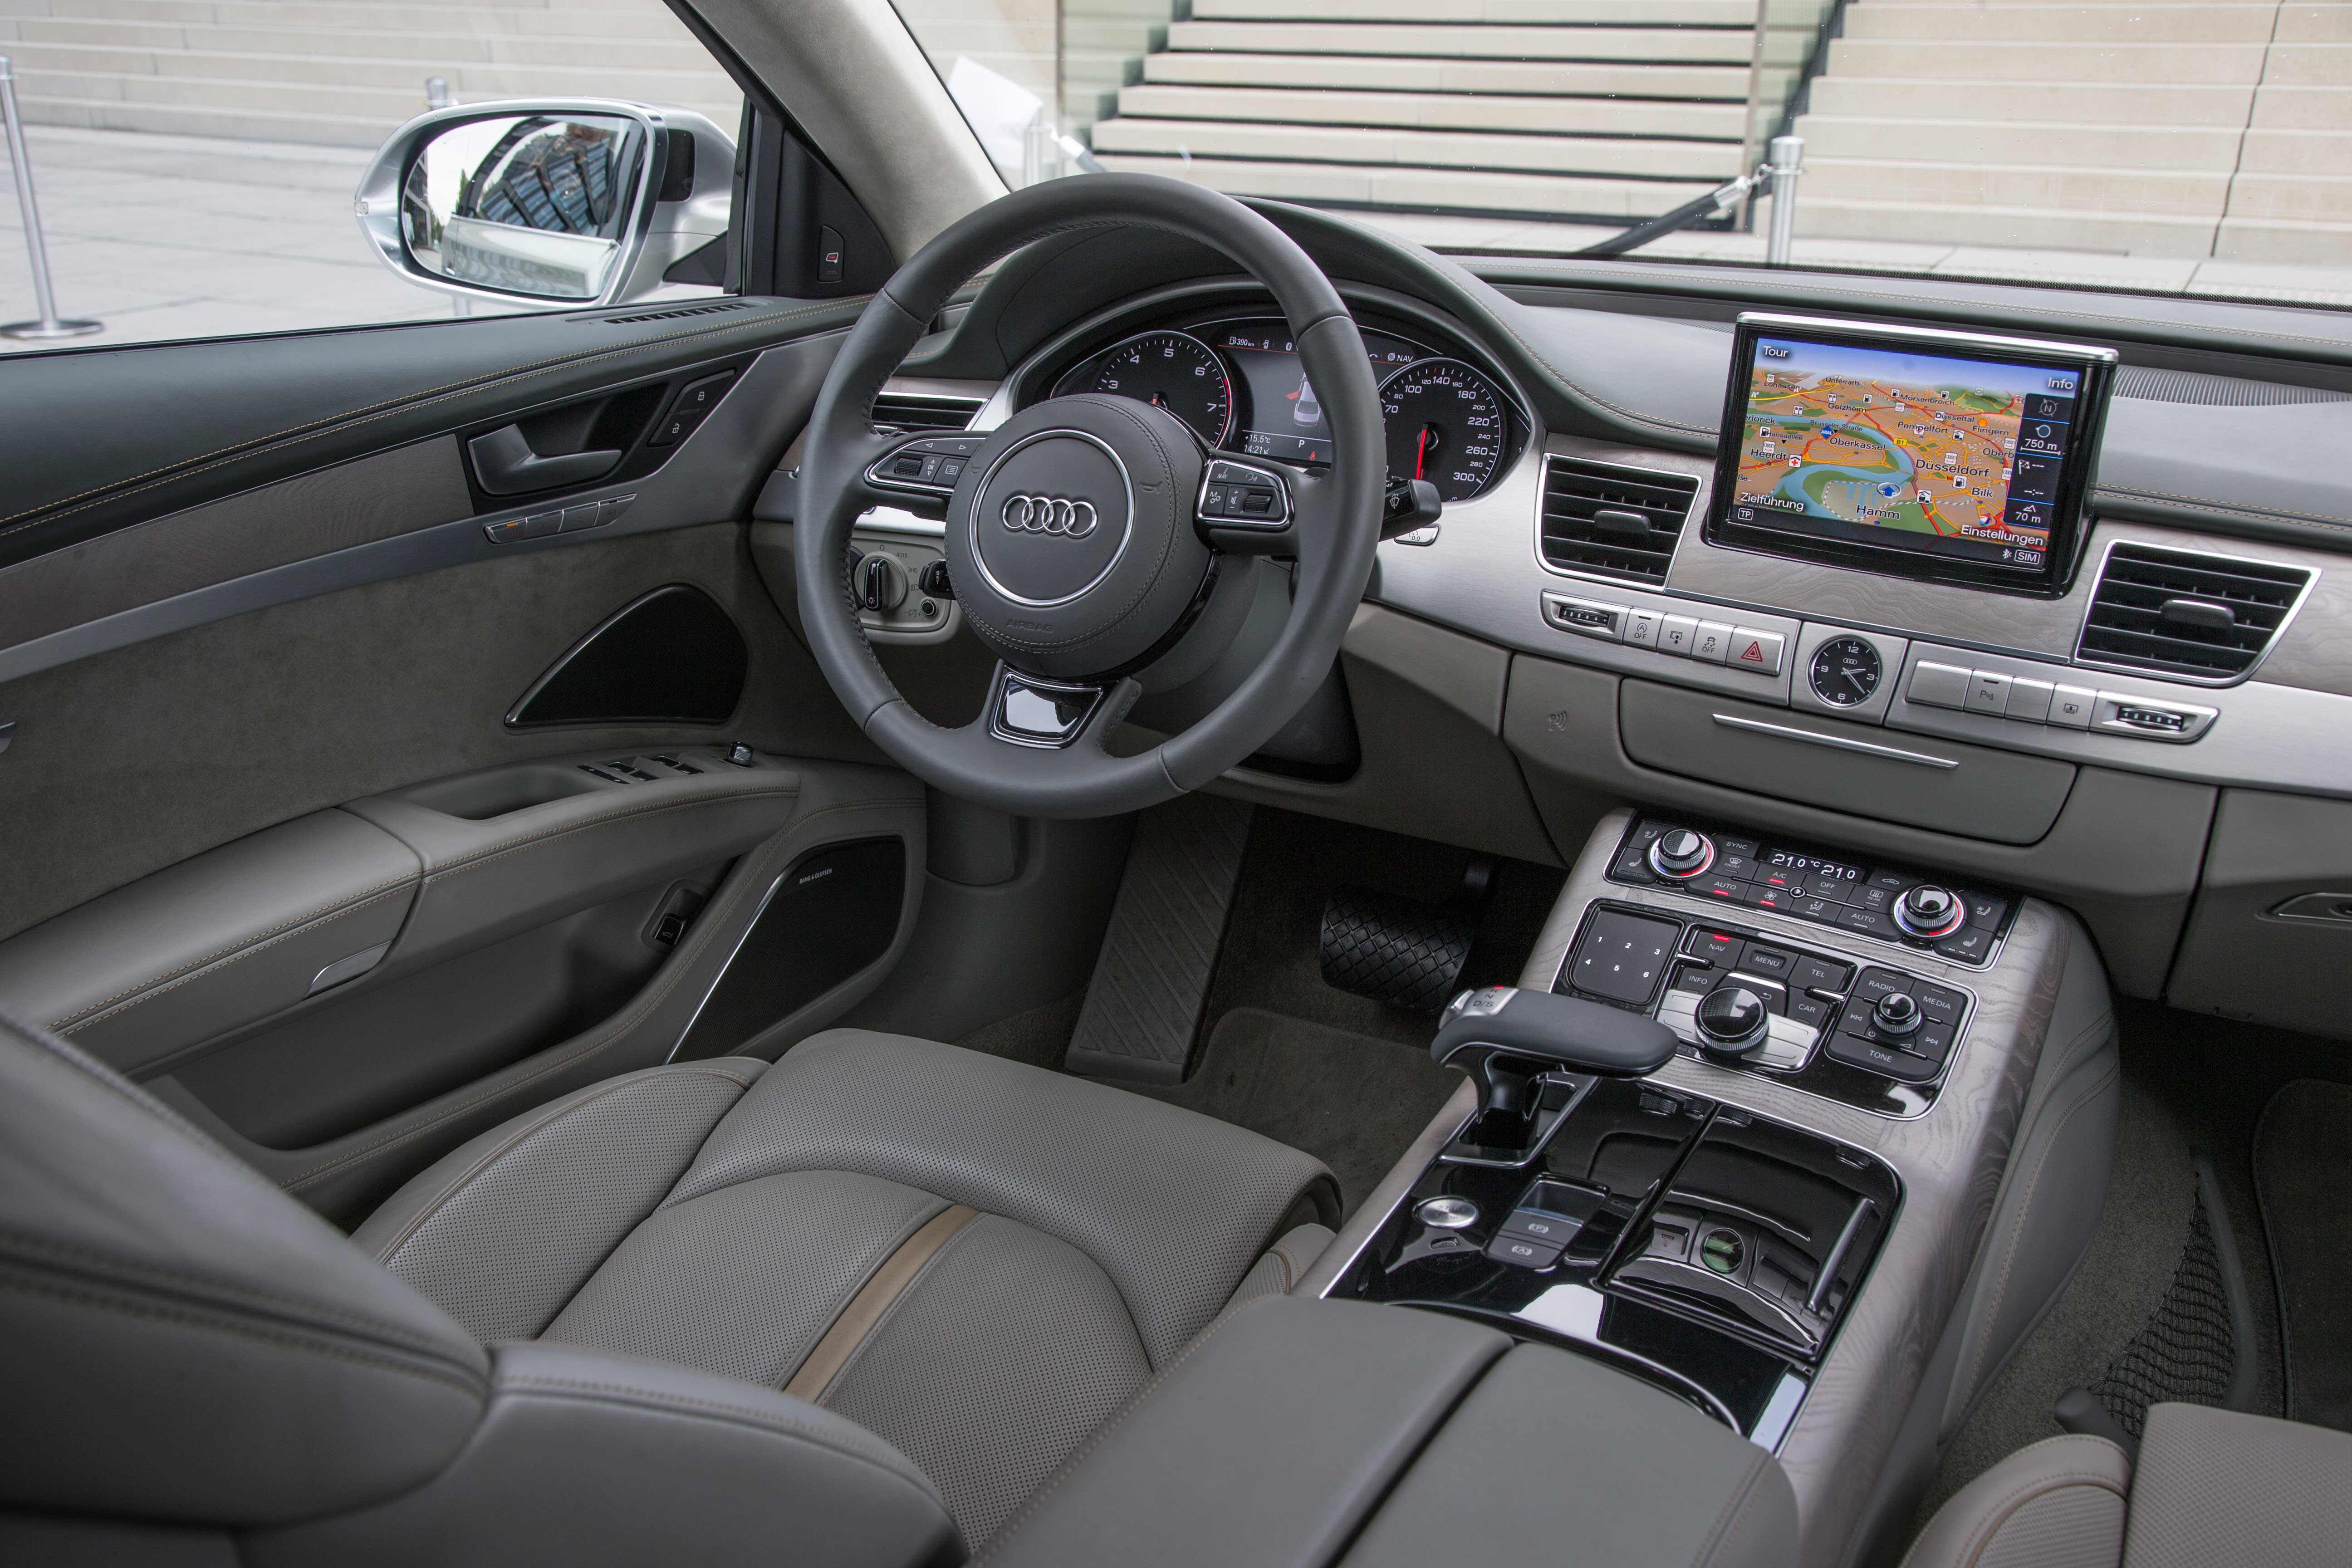 Førerpladsen i Audi A8 er i lighed med resten af kabinen en opvisning i sublimt håndværk. Det gælder alt fra valg af materialer til finish, pasform og indretning. Antallet af knapper er dog på et forvirrende højt niveau.